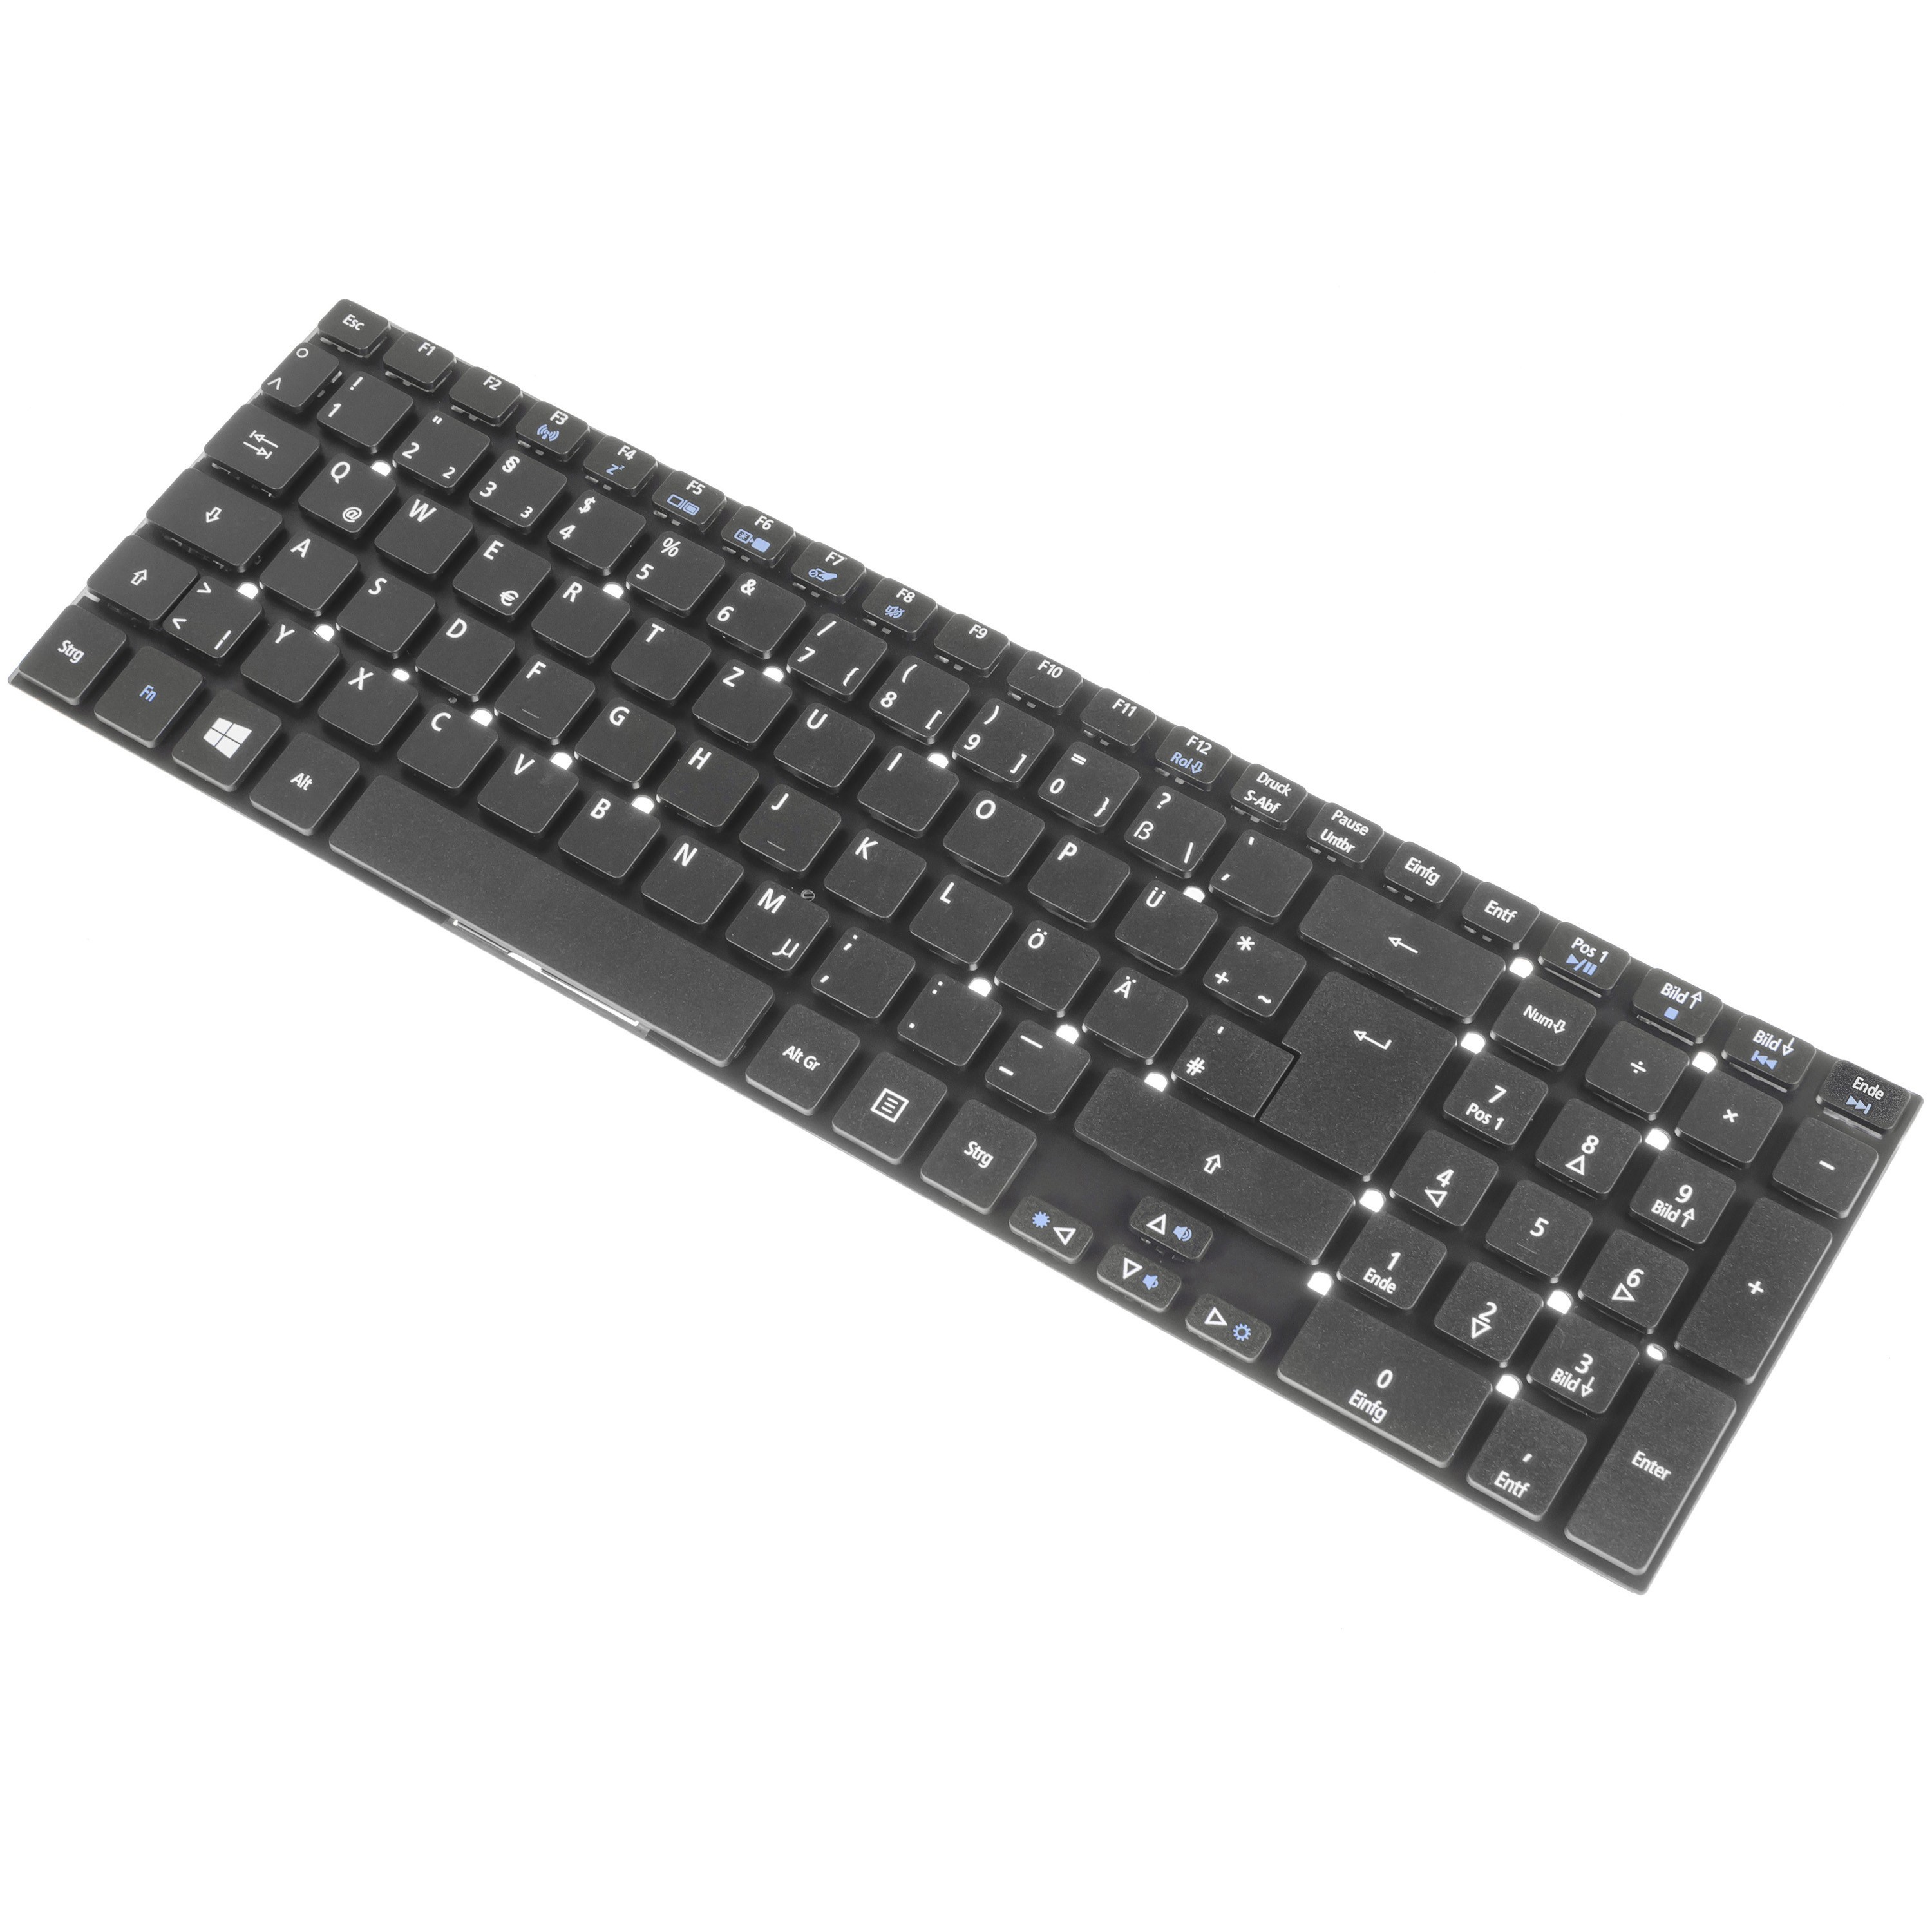 **Green Cell Keyboard for Laptop Acer Aspire 5342 5755G E5-511 V3, Extensa 2508 2509 2510